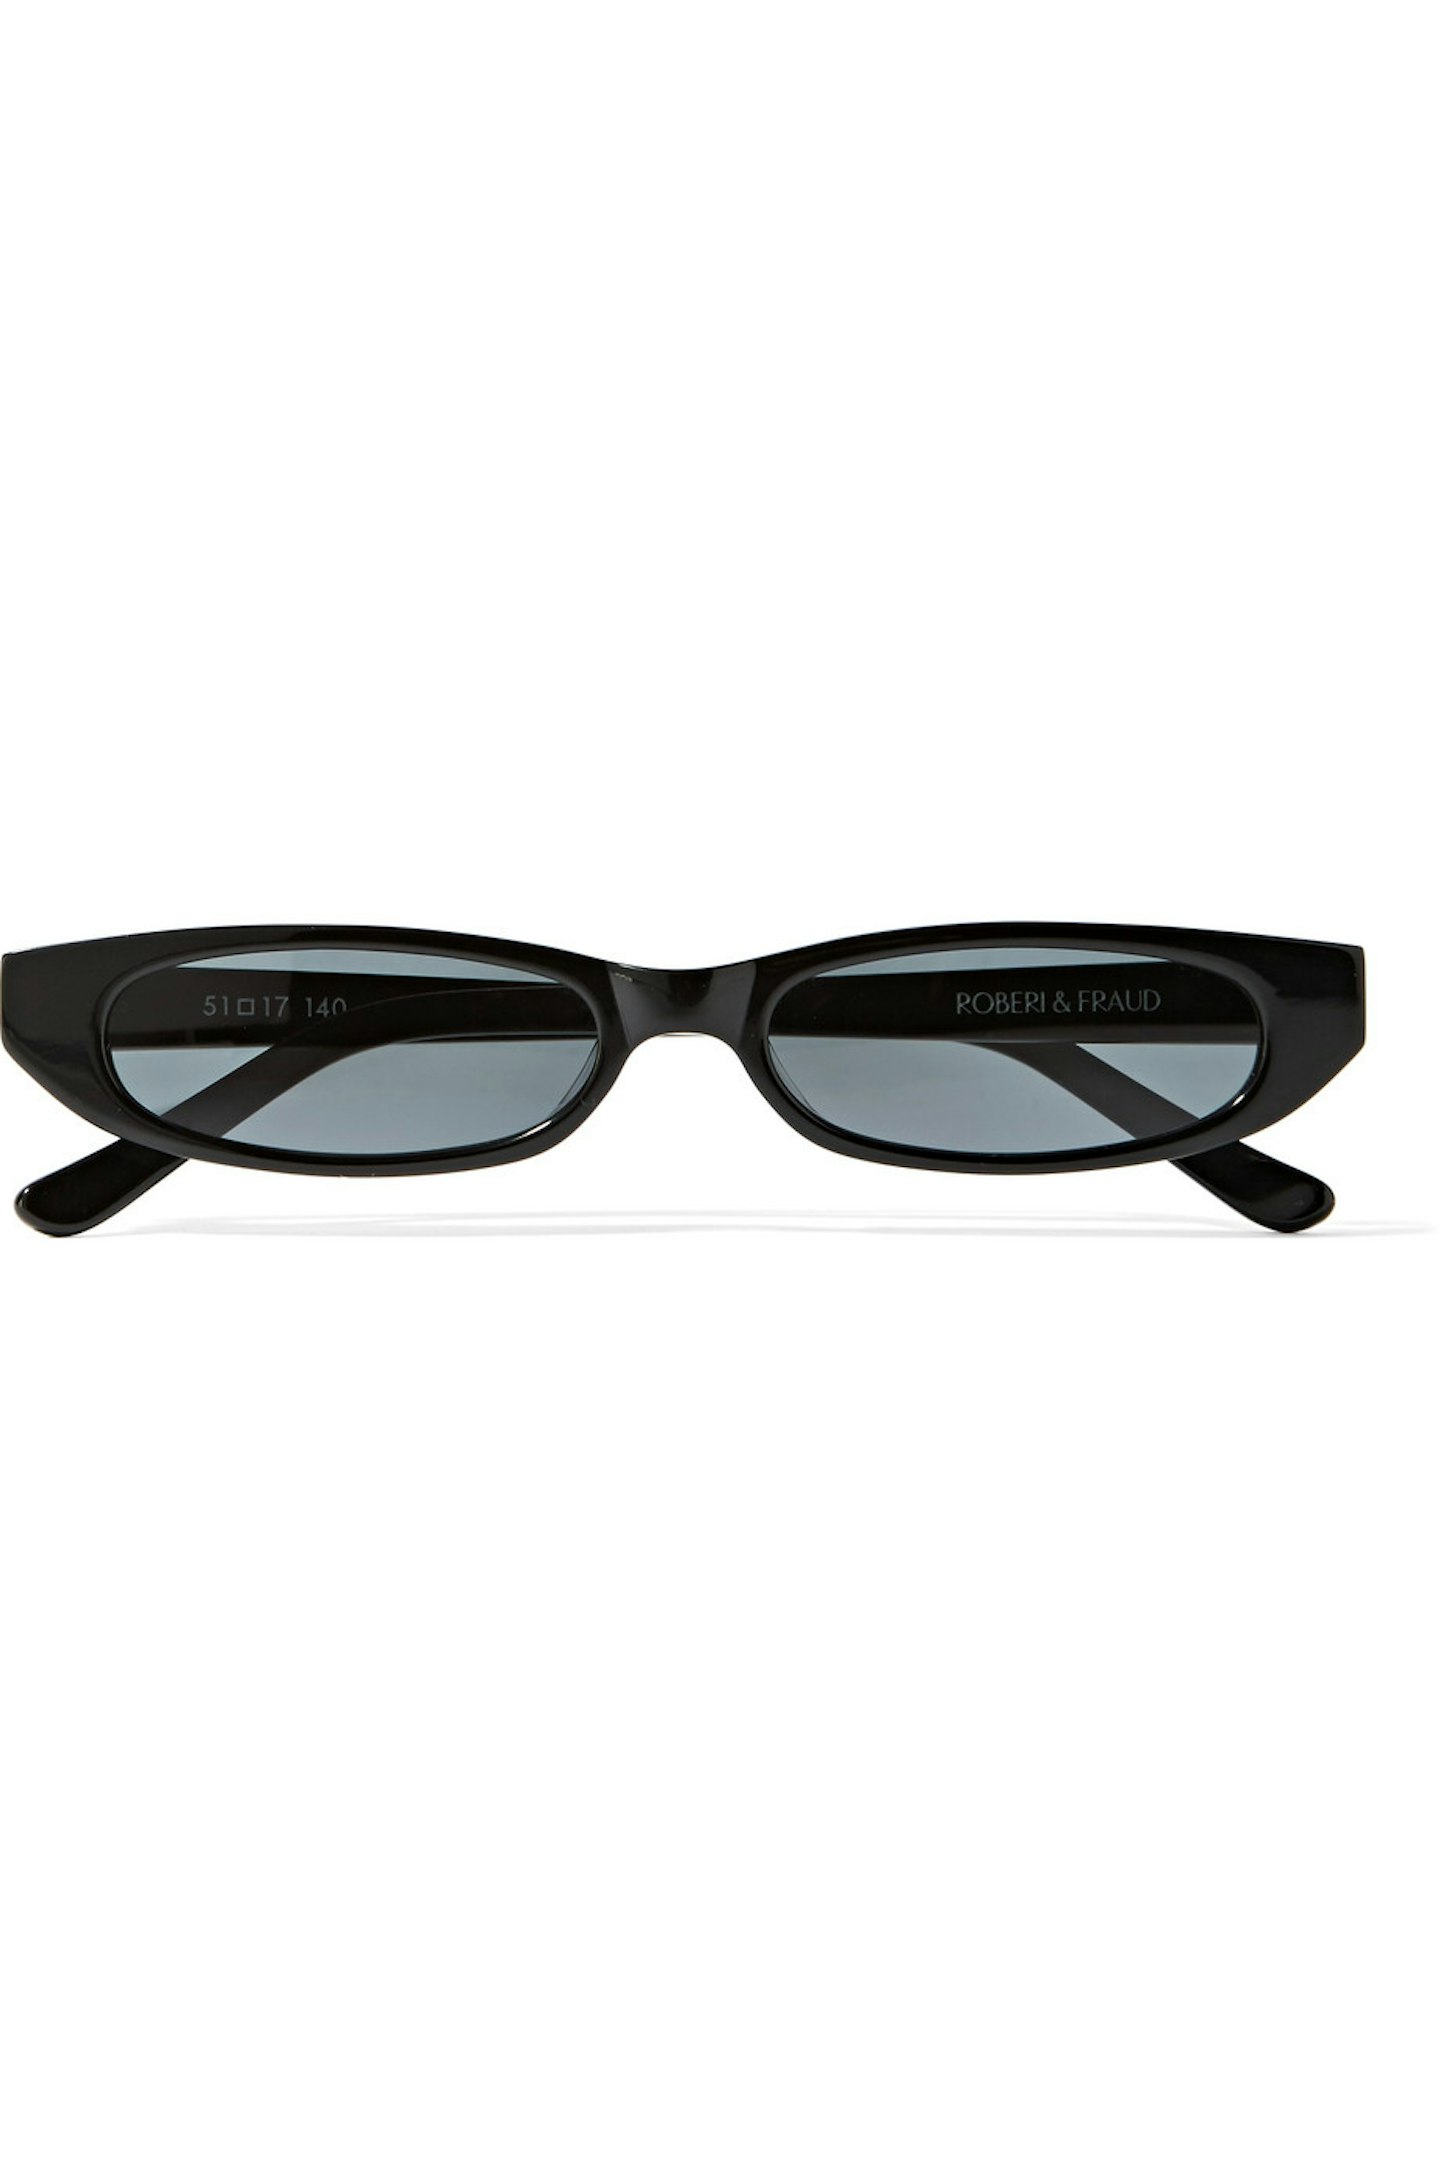 roberi and fraud oval sunglasses